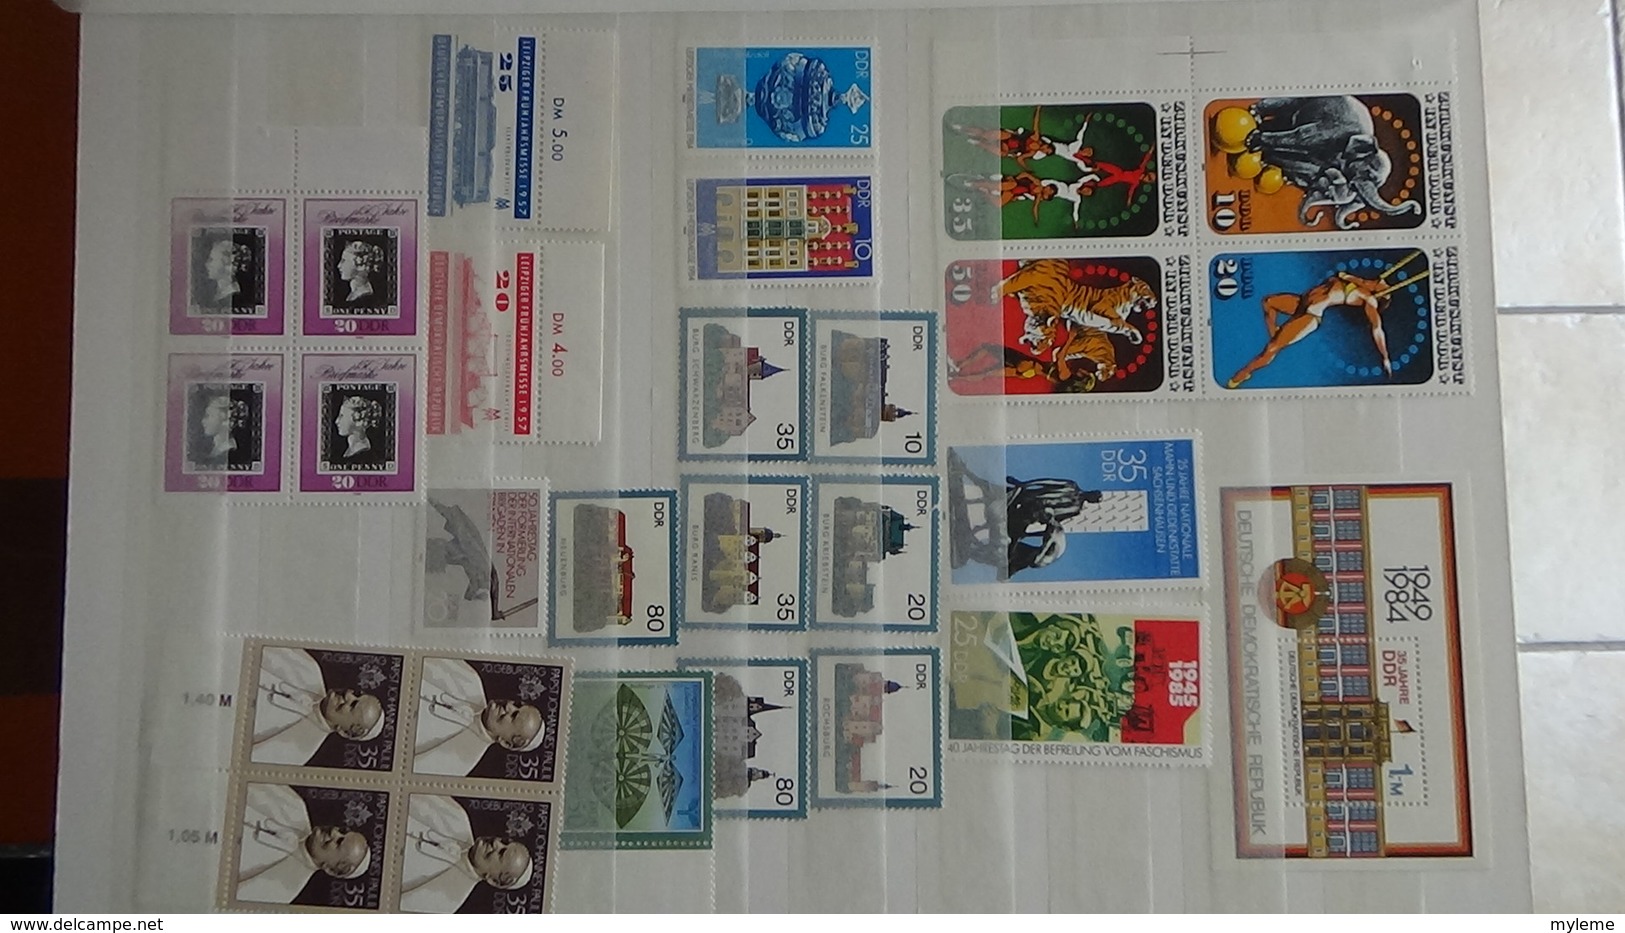 B376 Collection timbres et blocs ** d'Allemagne. A saisir !!!